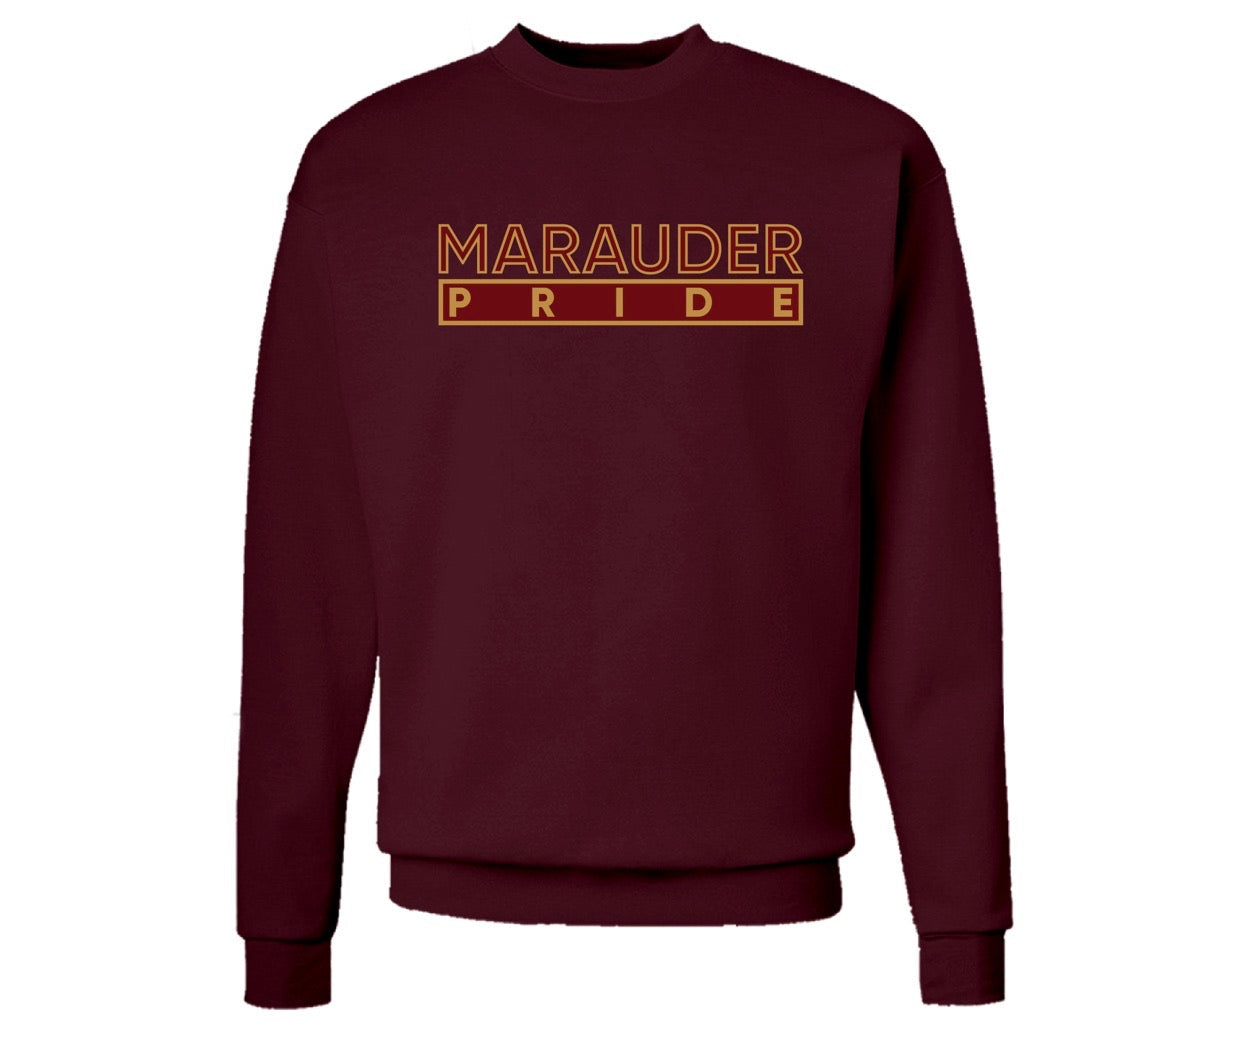 The “Marauder Pride” Hoodie in Maroon/Gold (OH)